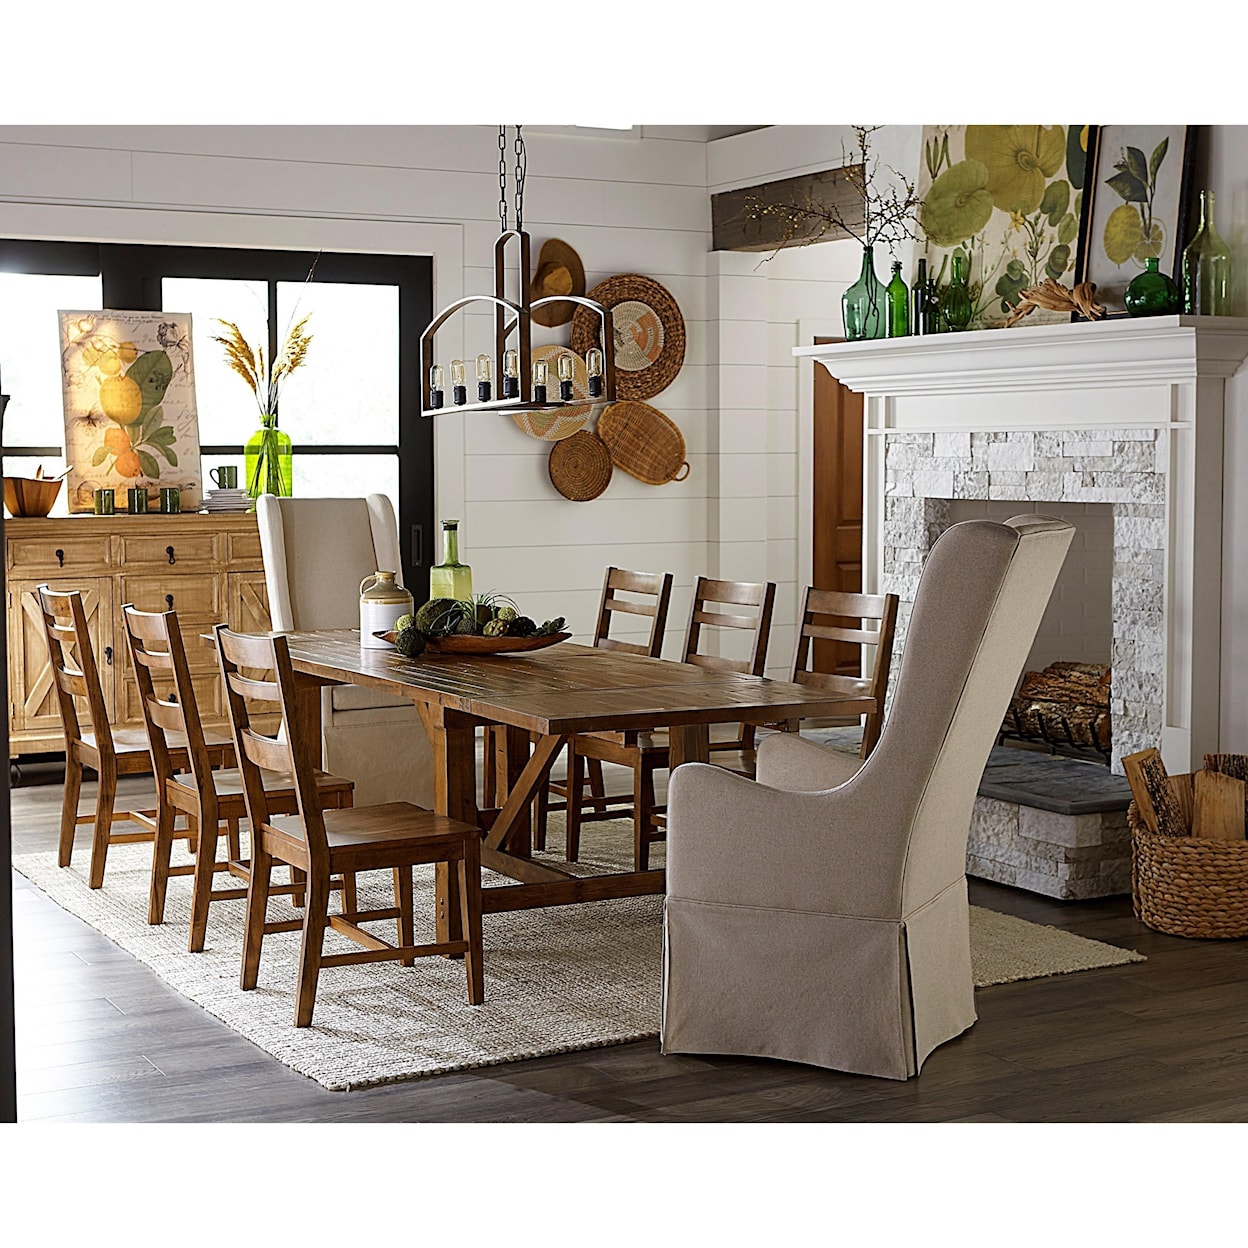 Progressive Furniture Wilder Dining Chair